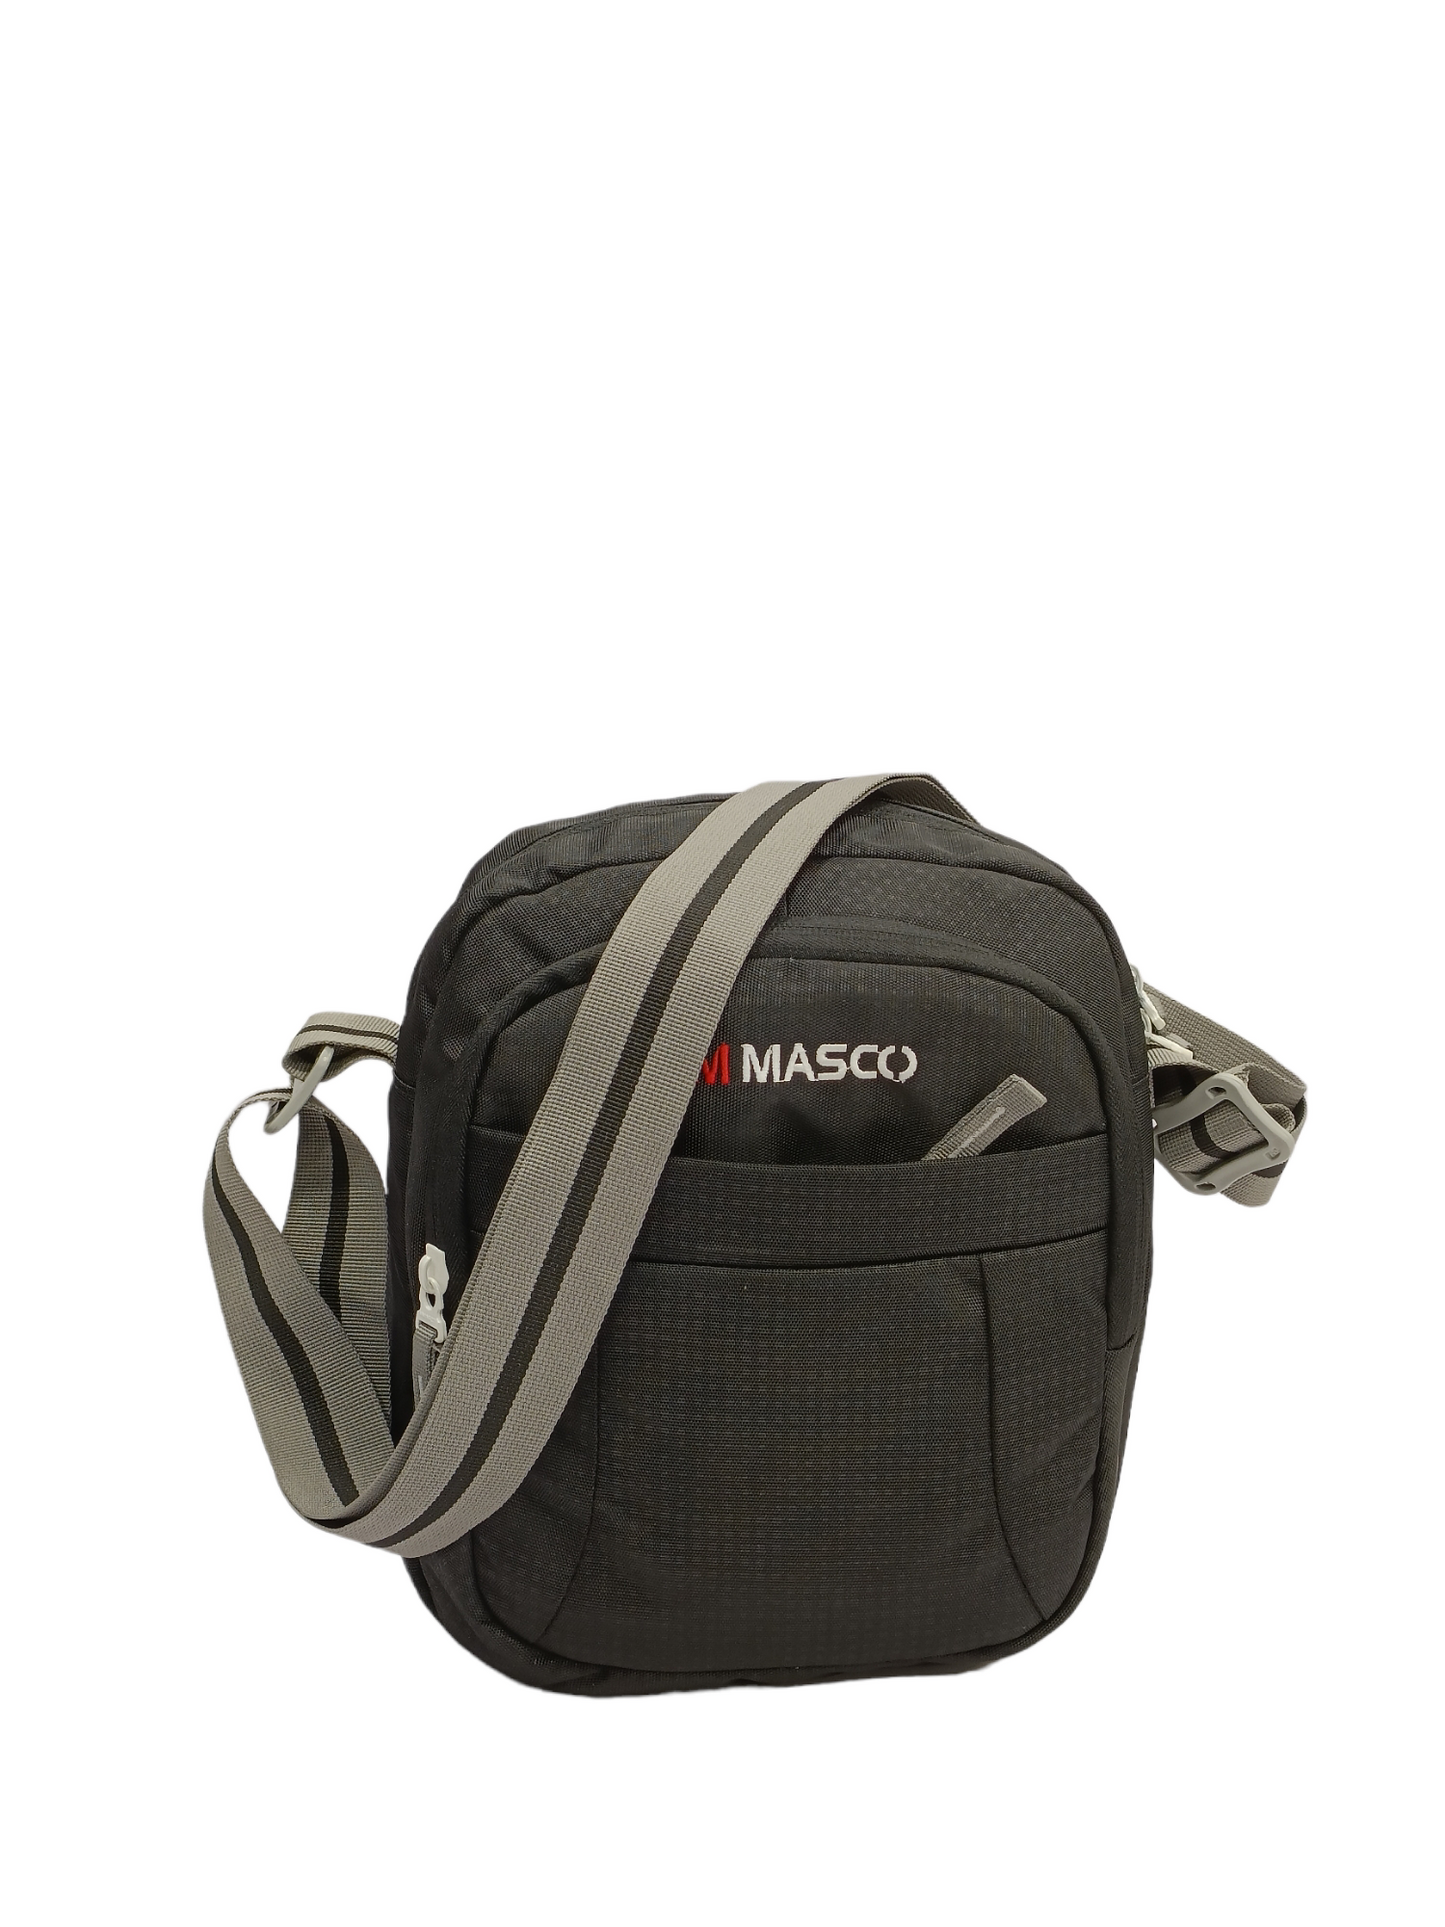 M masco premium quality sling bag